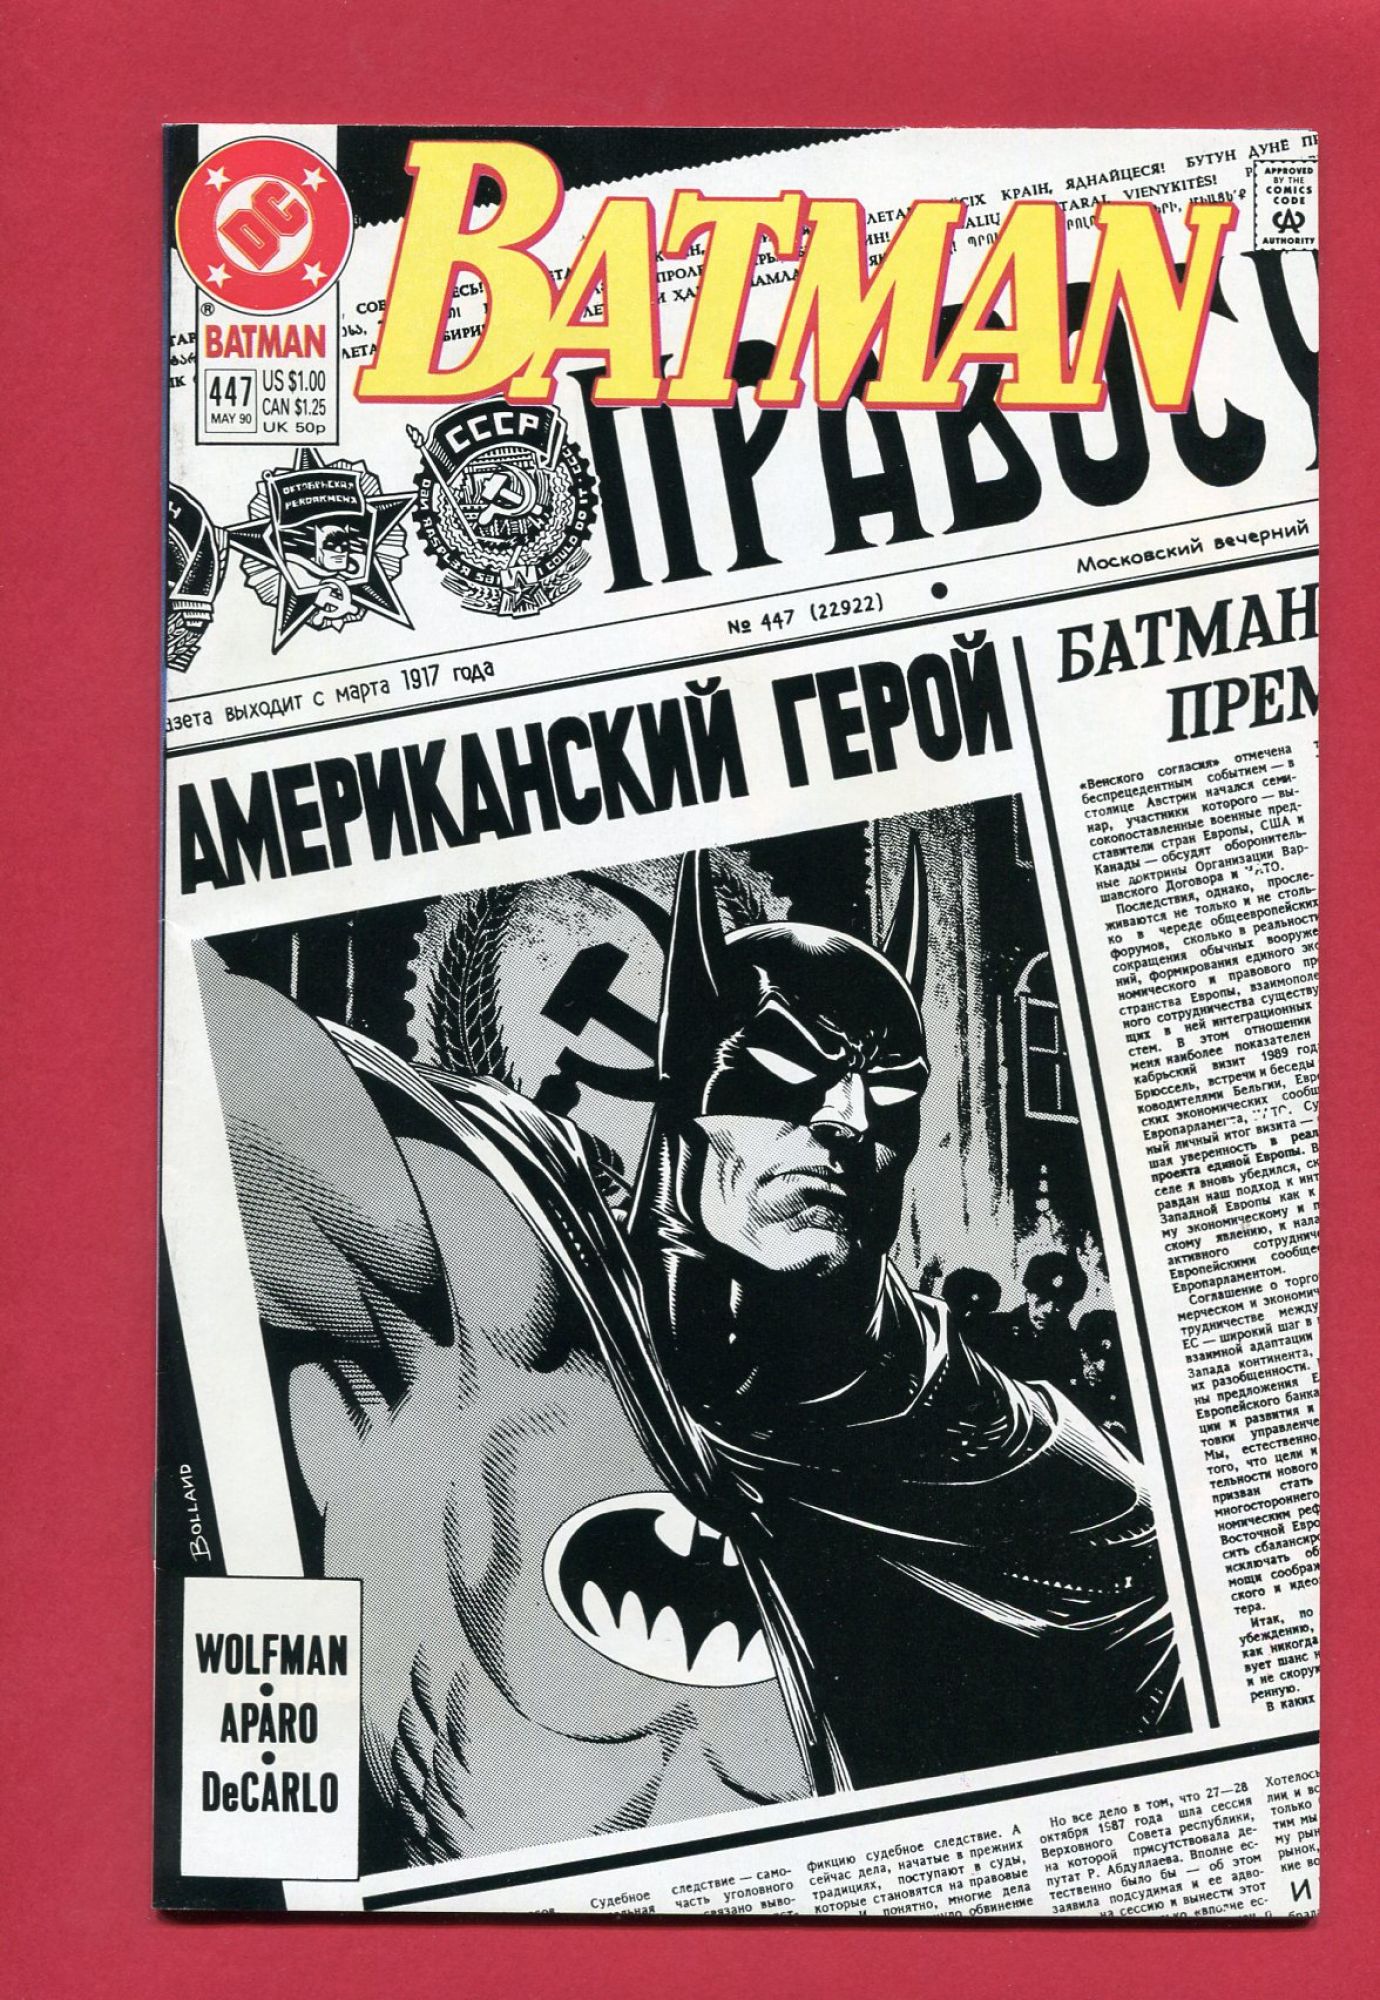 Batman #447, May 1990, 9.4 NM